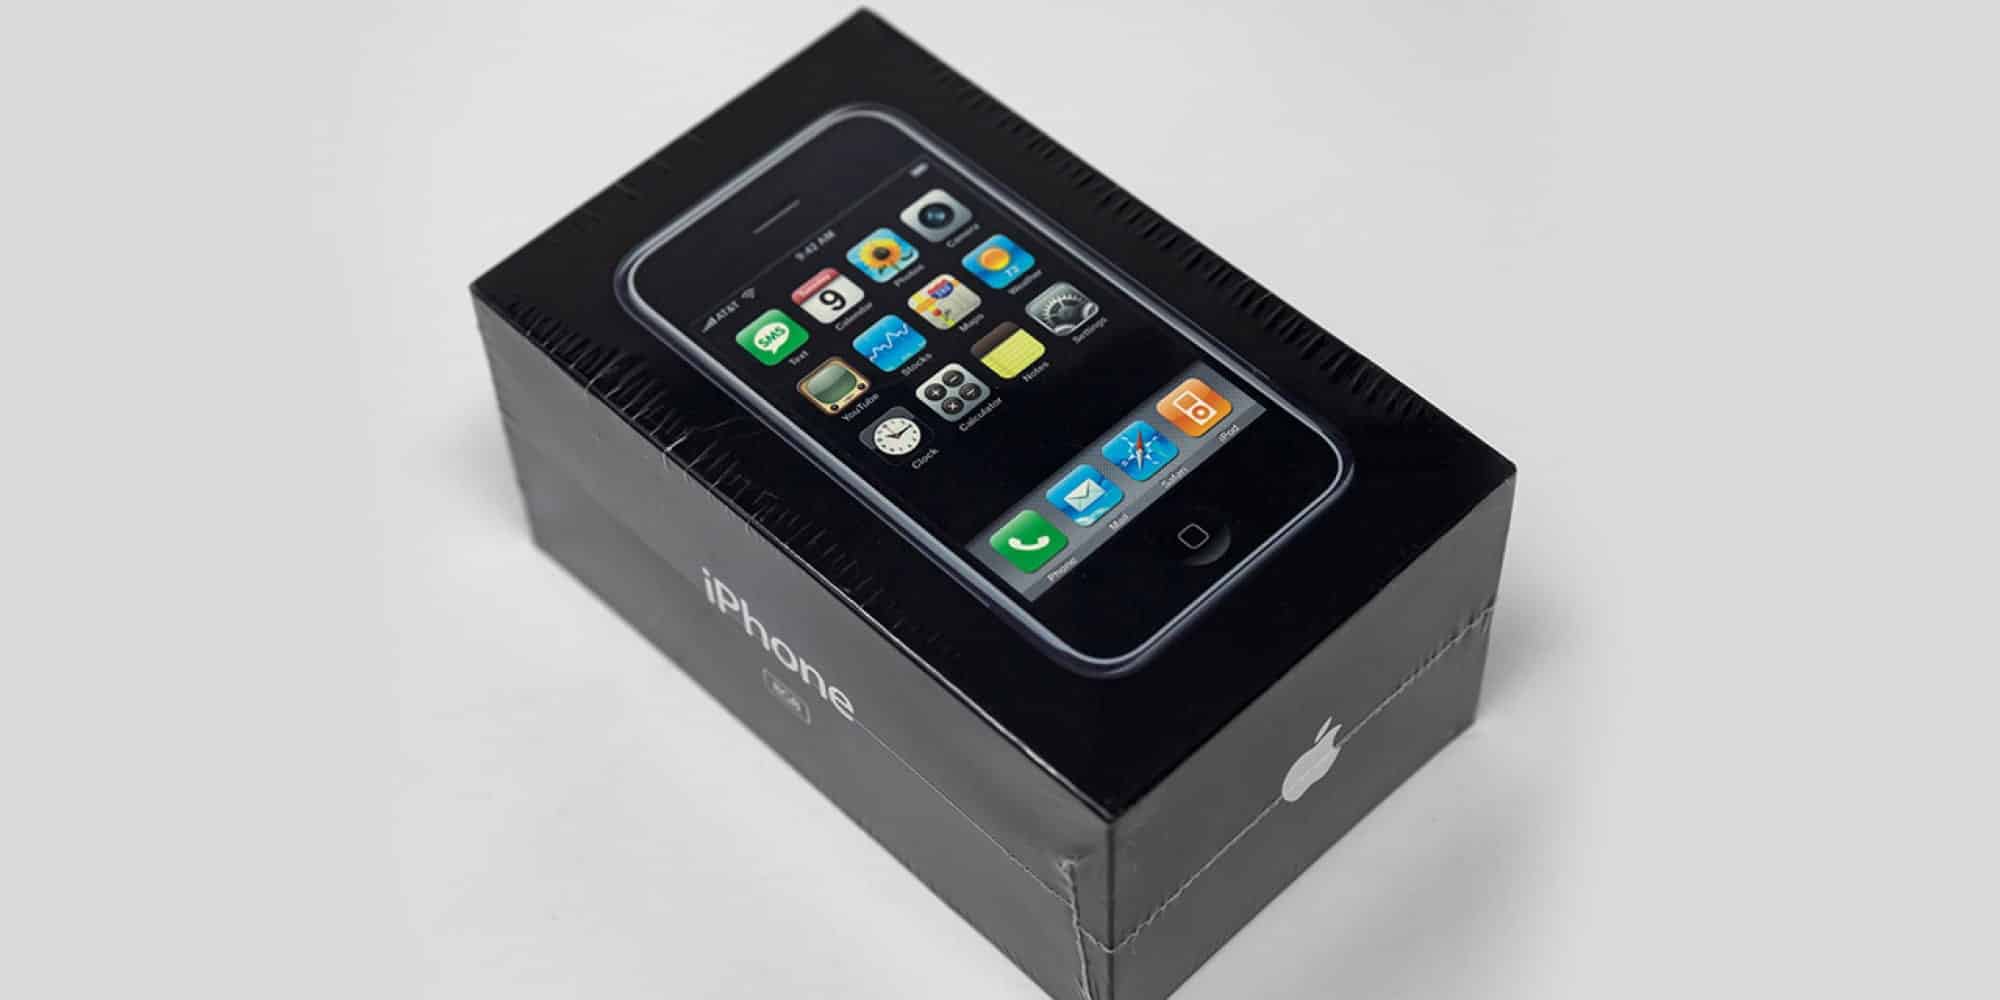 Σφραγισμένο iPhone πρώτης γενιάς πωλήθηκε σε δημοπρασία για 39.000 δολάρια